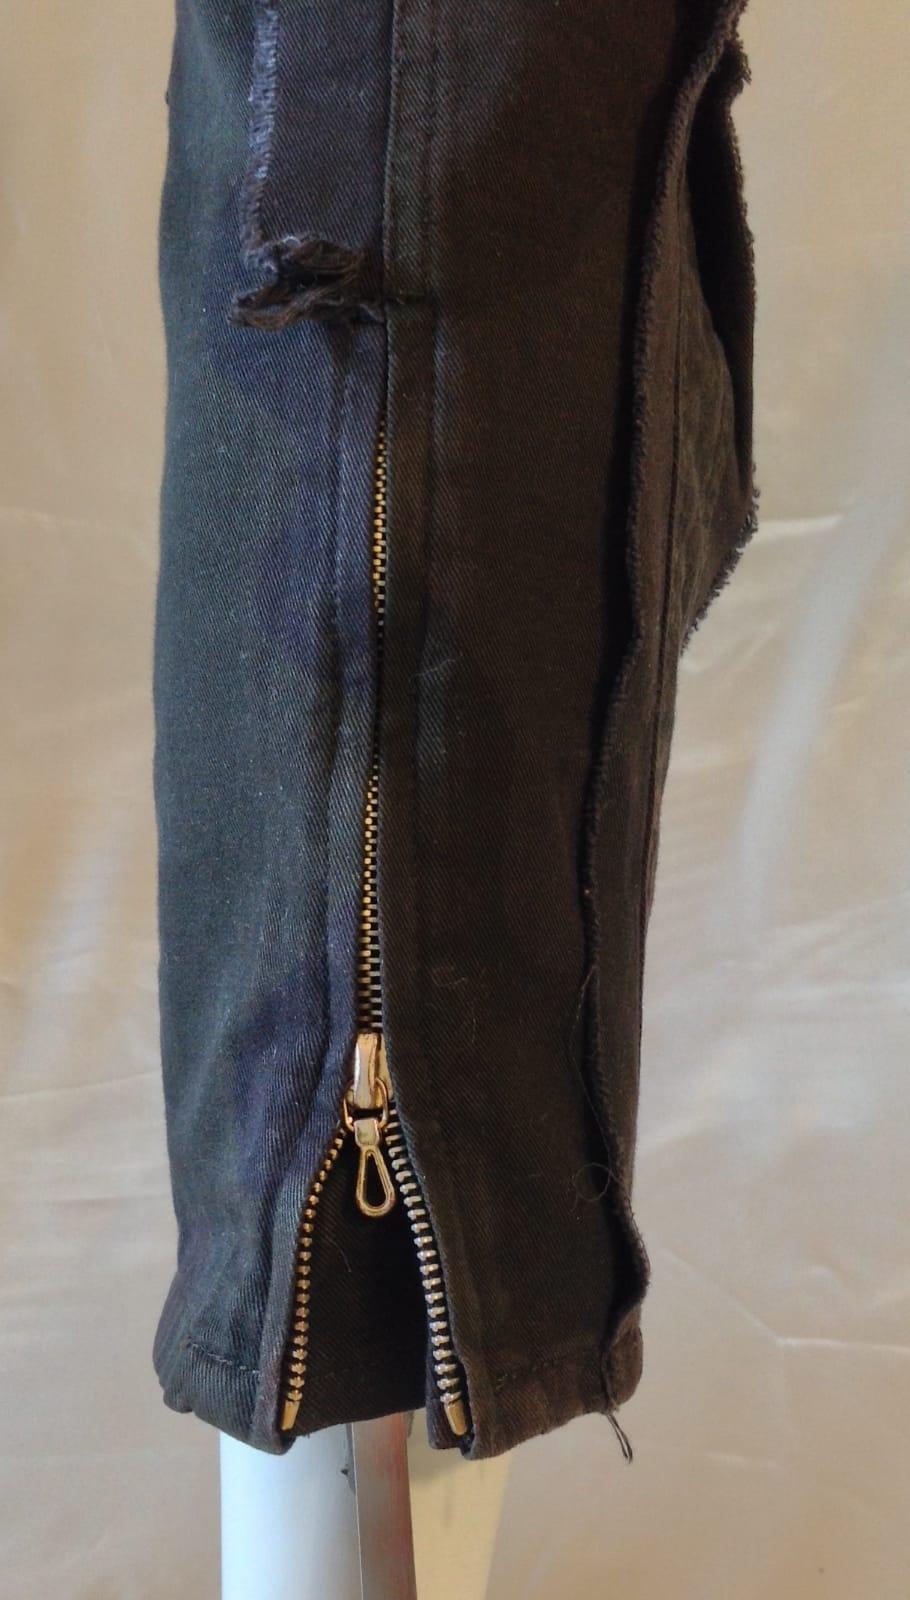 Gianfranco Ferré drop crotch black jeans, c 2010 For Sale 6